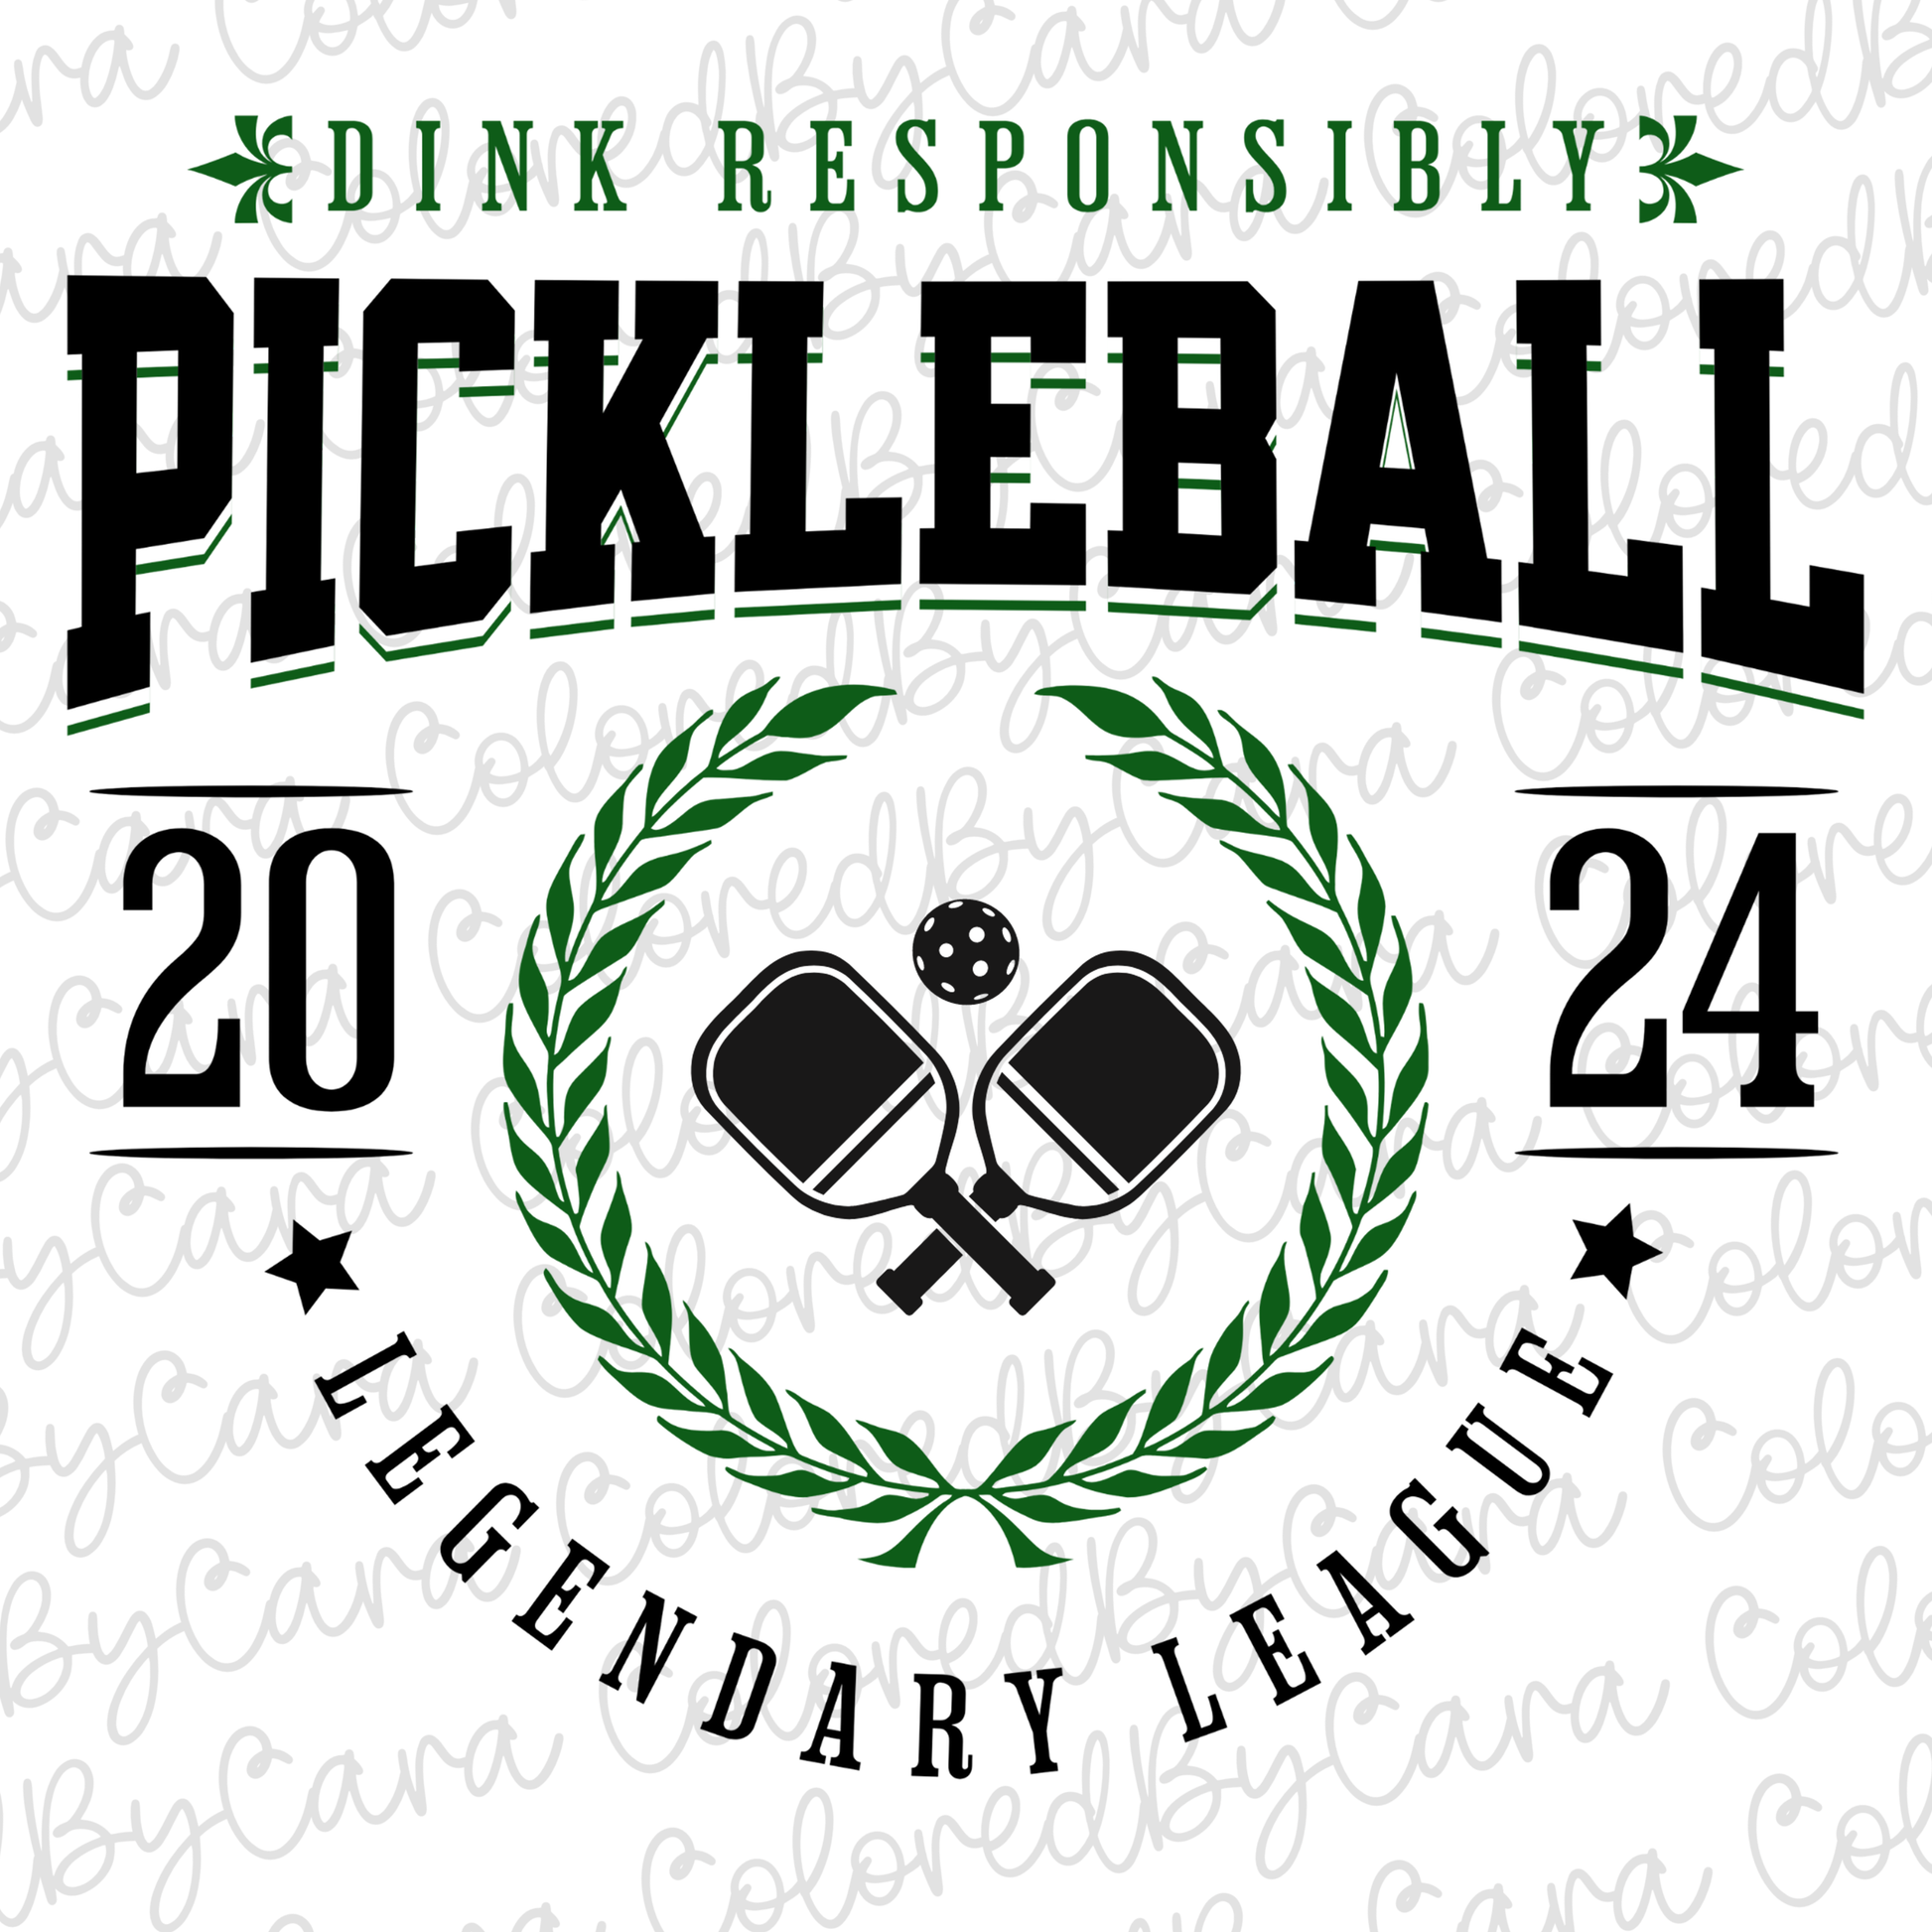 Dink Responsibly Pickleball Sweatshirt design details 